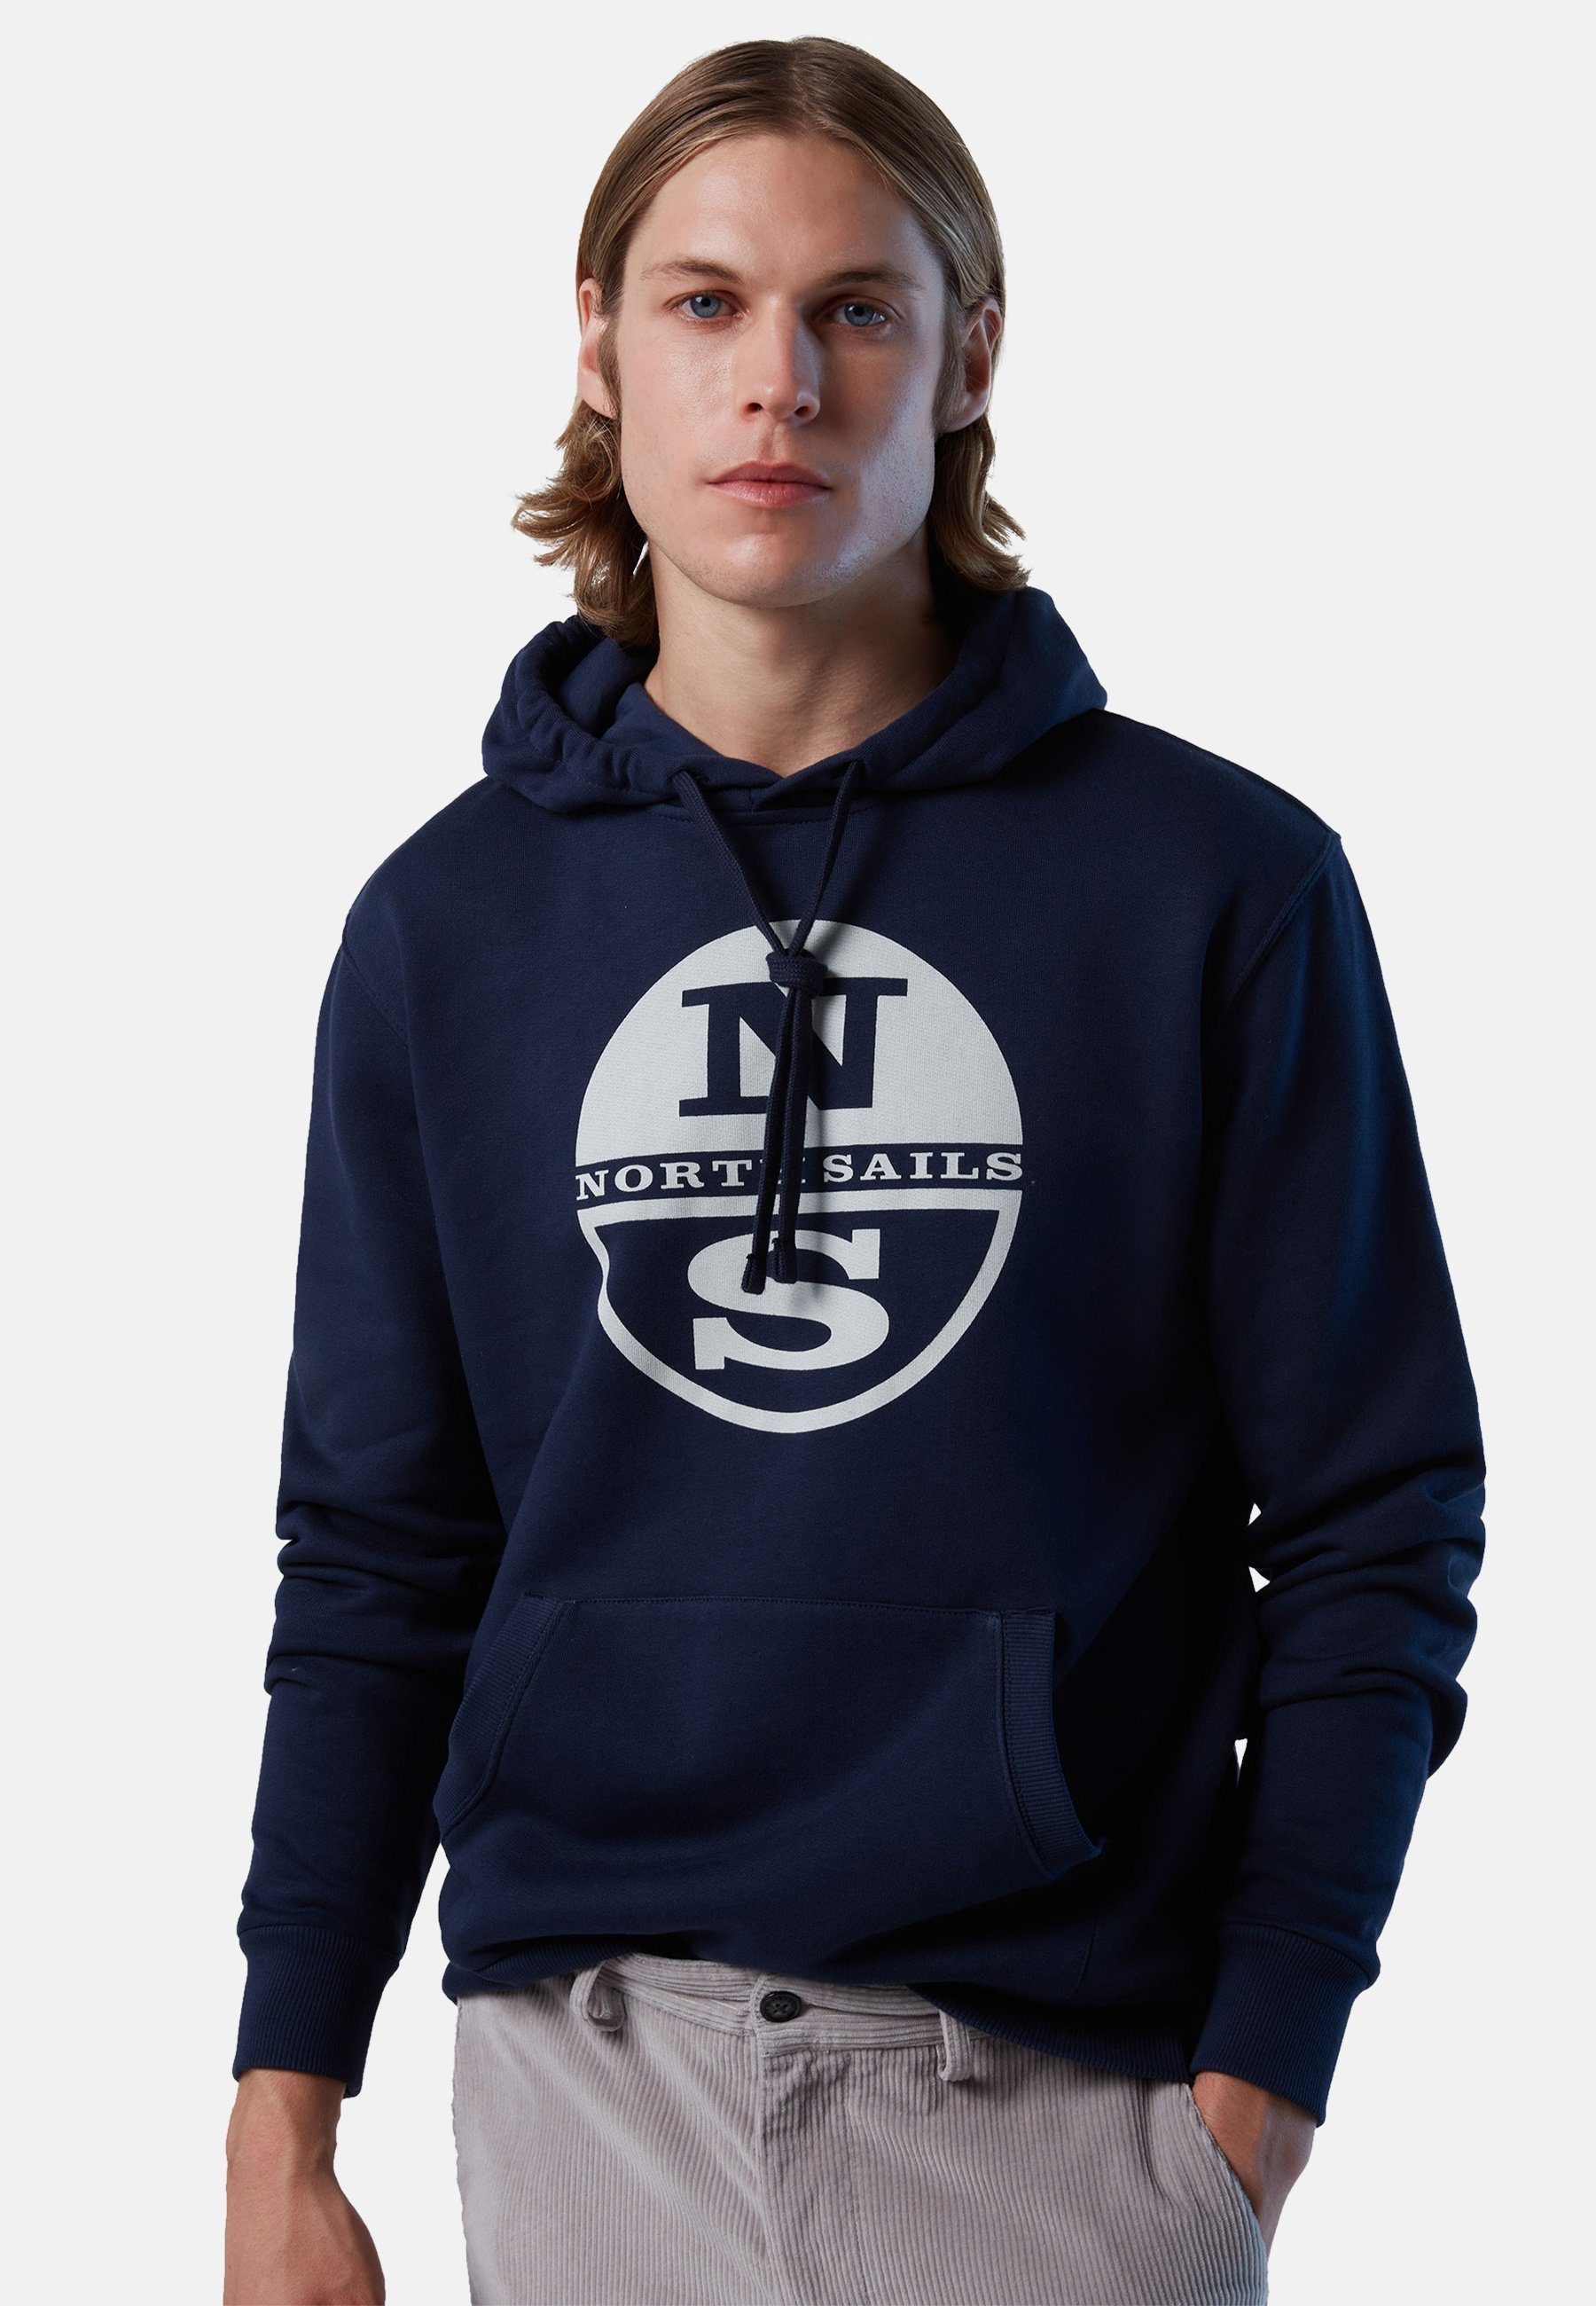 North klassischem navy Kapuzensweatshirt mit Sails Kapuzenpulli mit Design Maxi-Logo-Druck